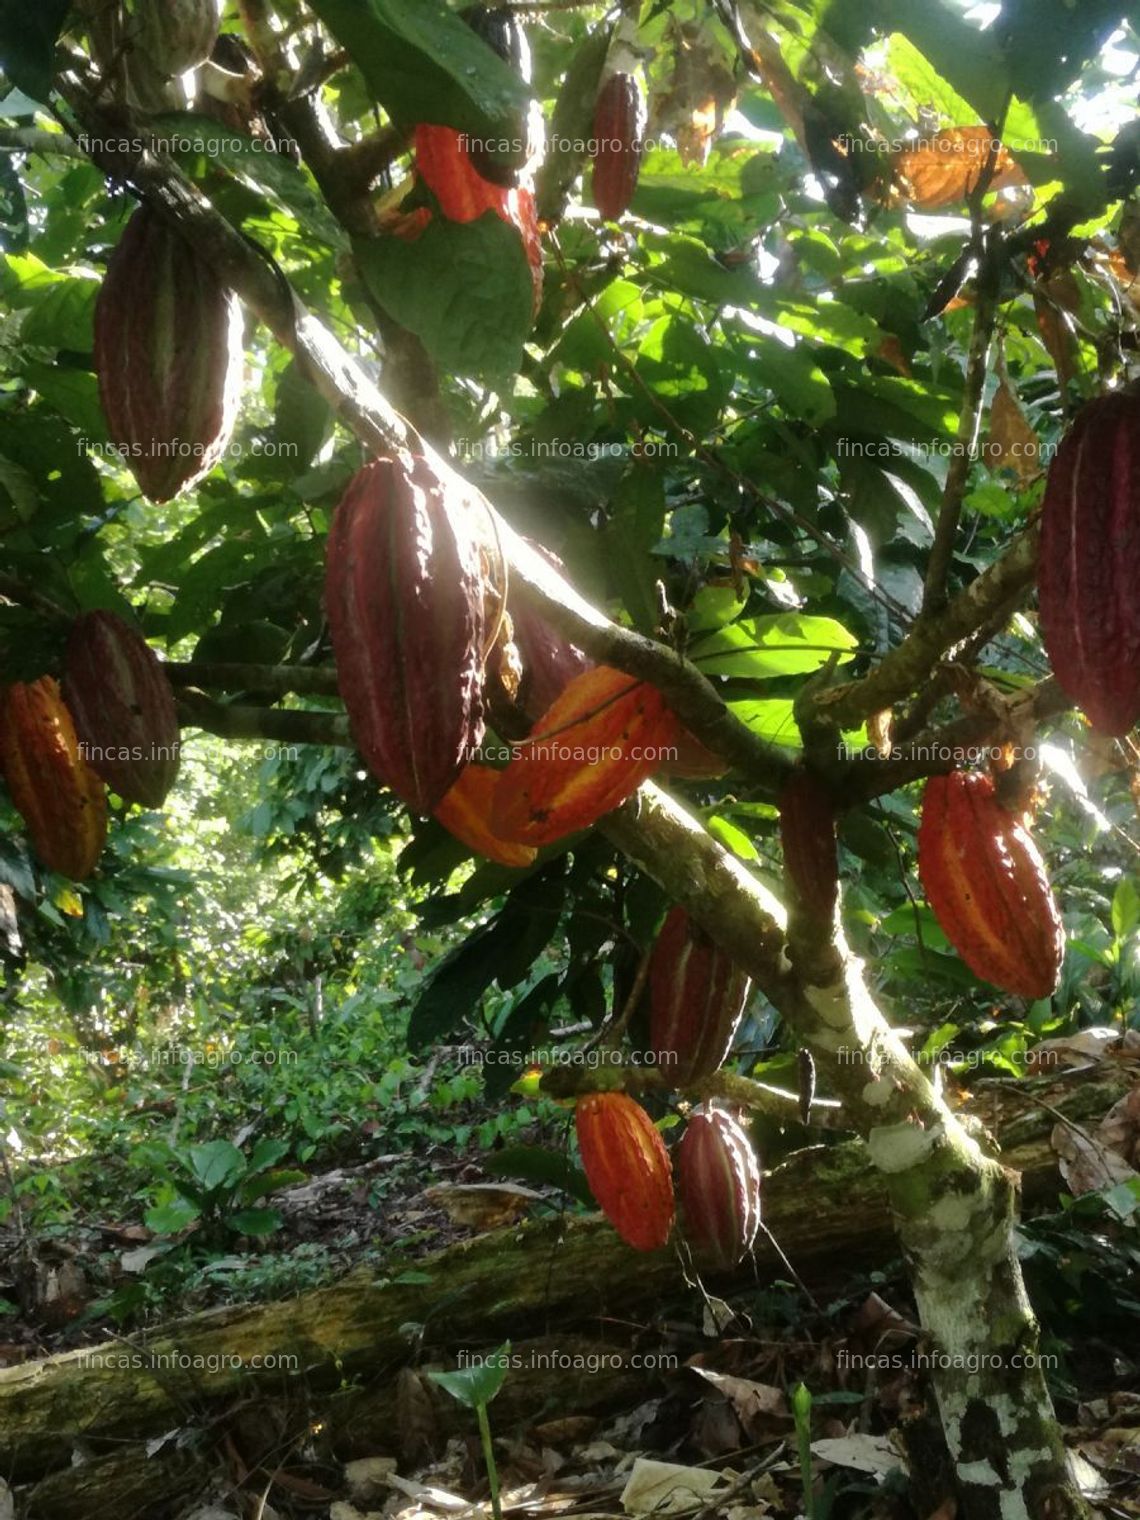 Fotos de A la venta terreno agrícola 120 h con plantaciónes de cacao 9 h en irazola- pucallpa- región ucayaliion